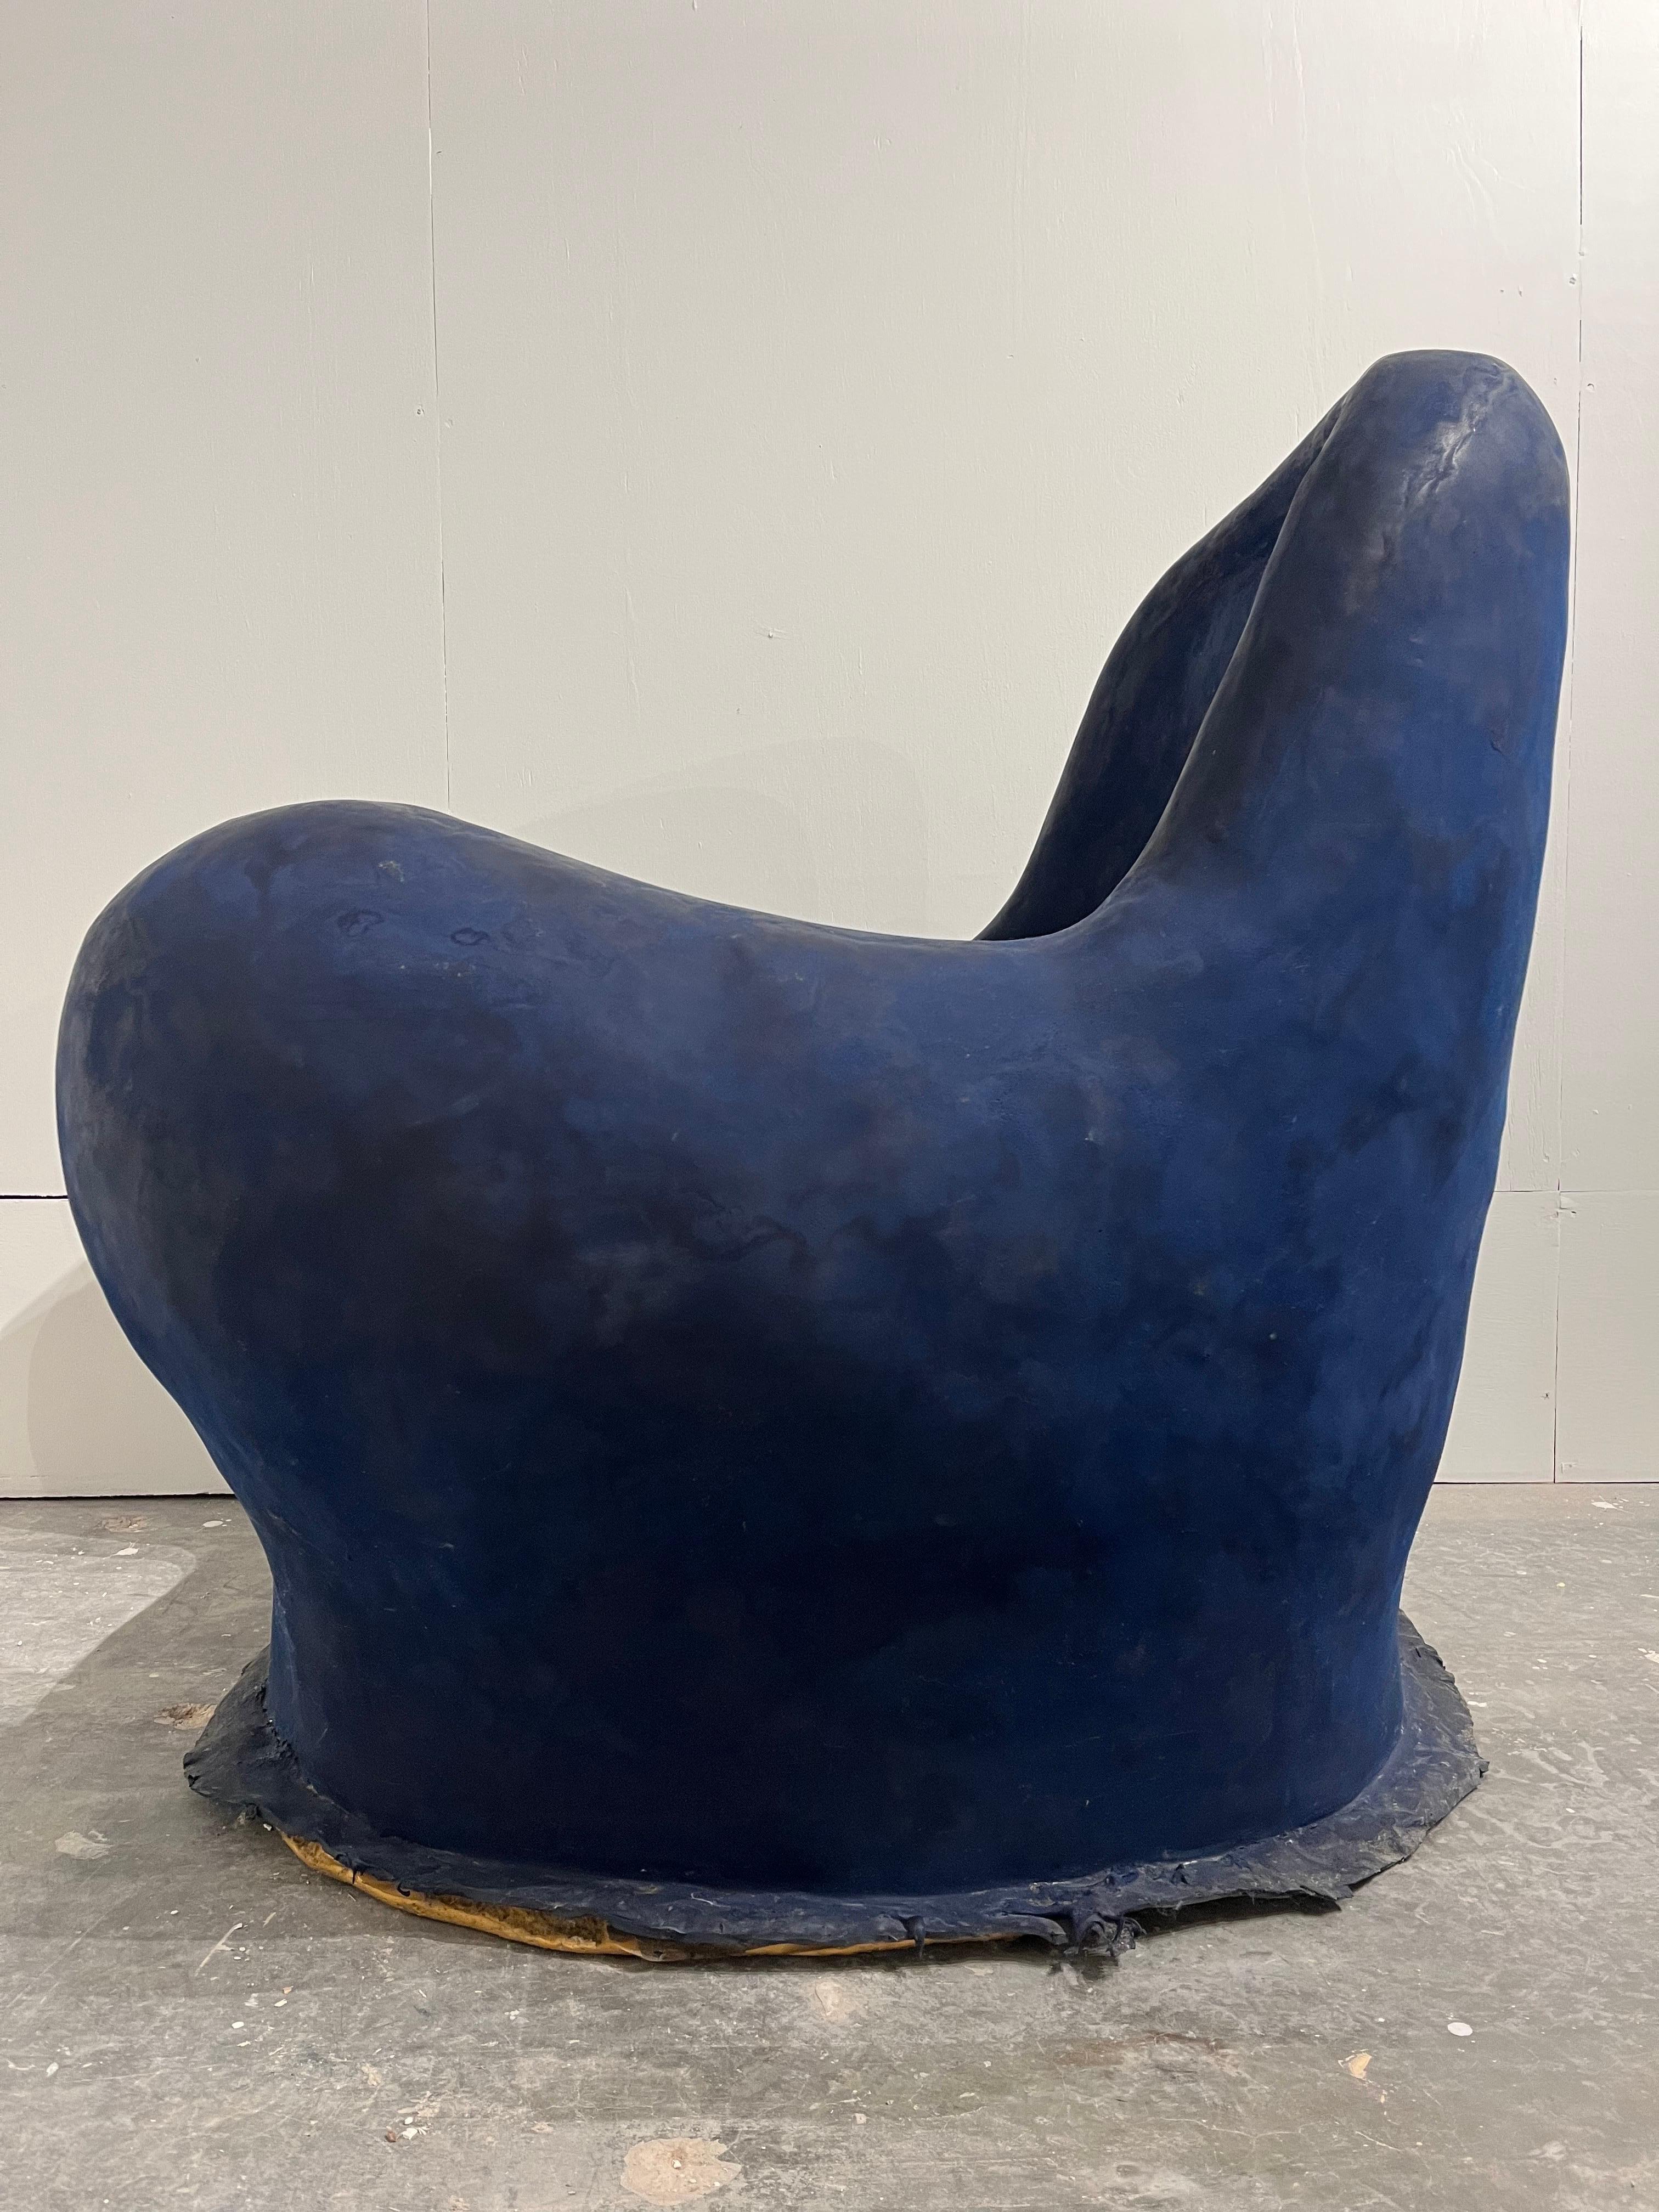 Louis Durot French Post War Contemporary Artist Blue Polymer Armchair Sculpture 13